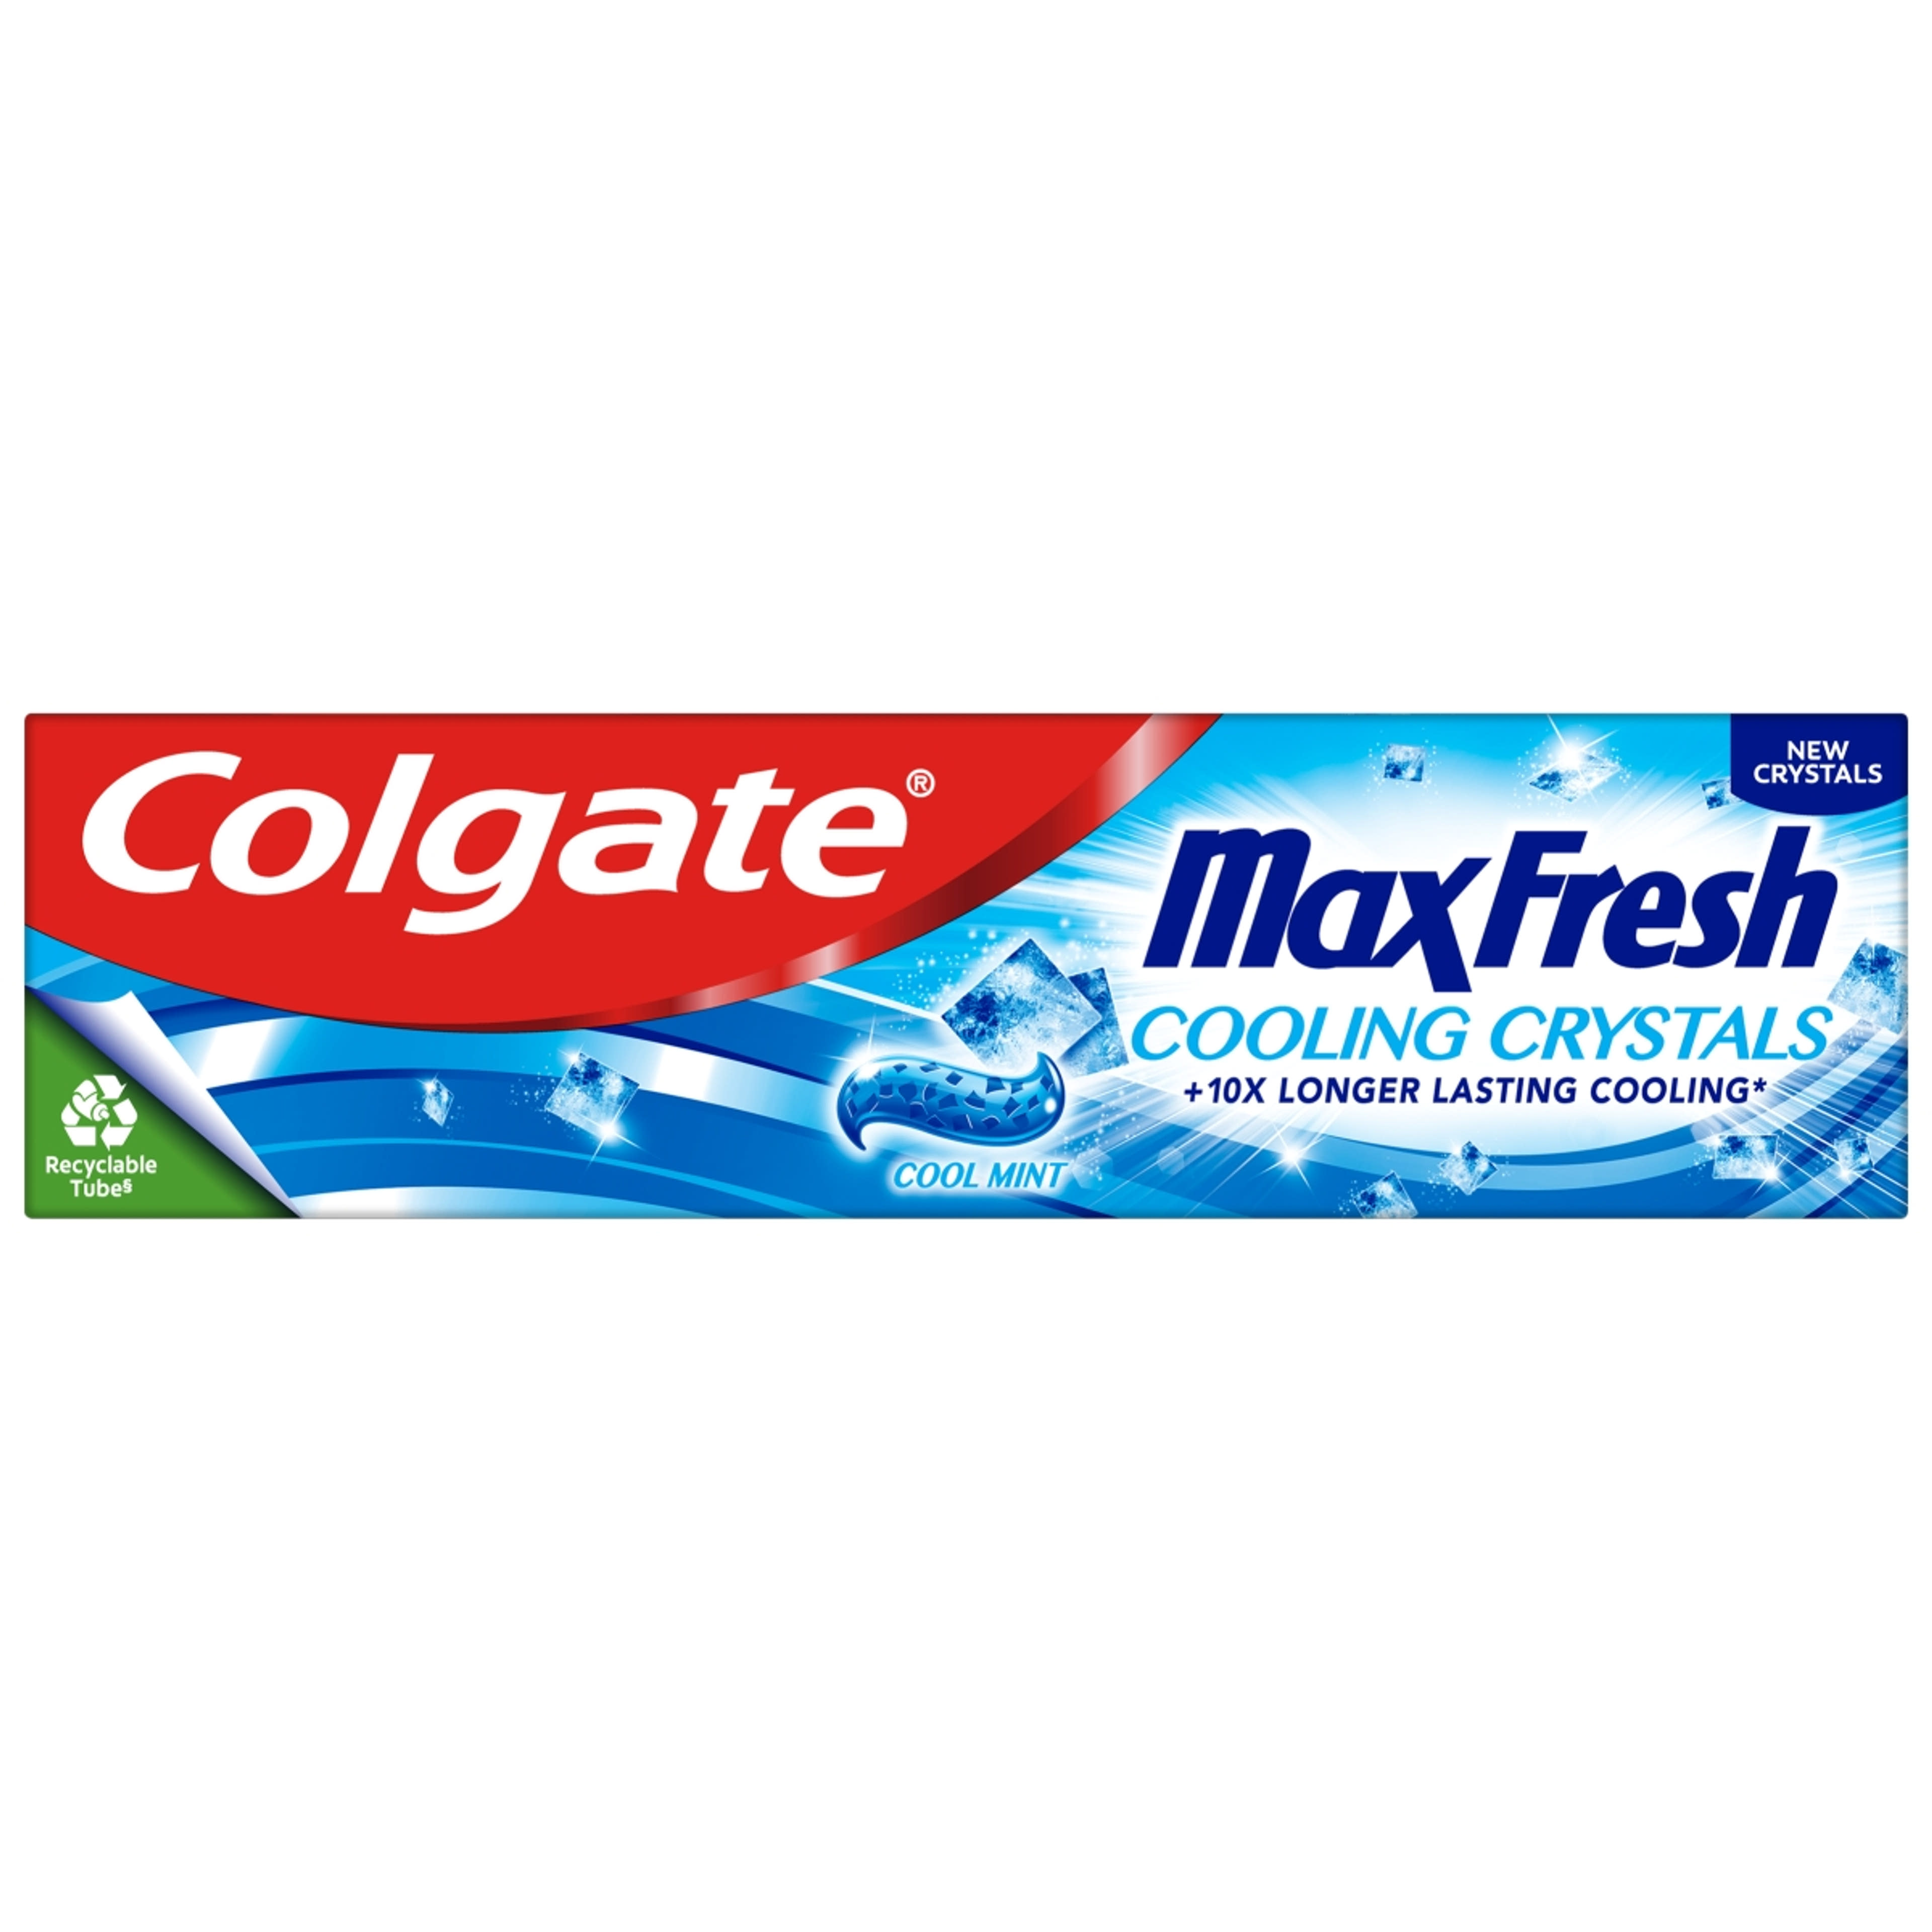 Colgate Max Fresh Cooling Crystals fogkrém - 75 ml-1